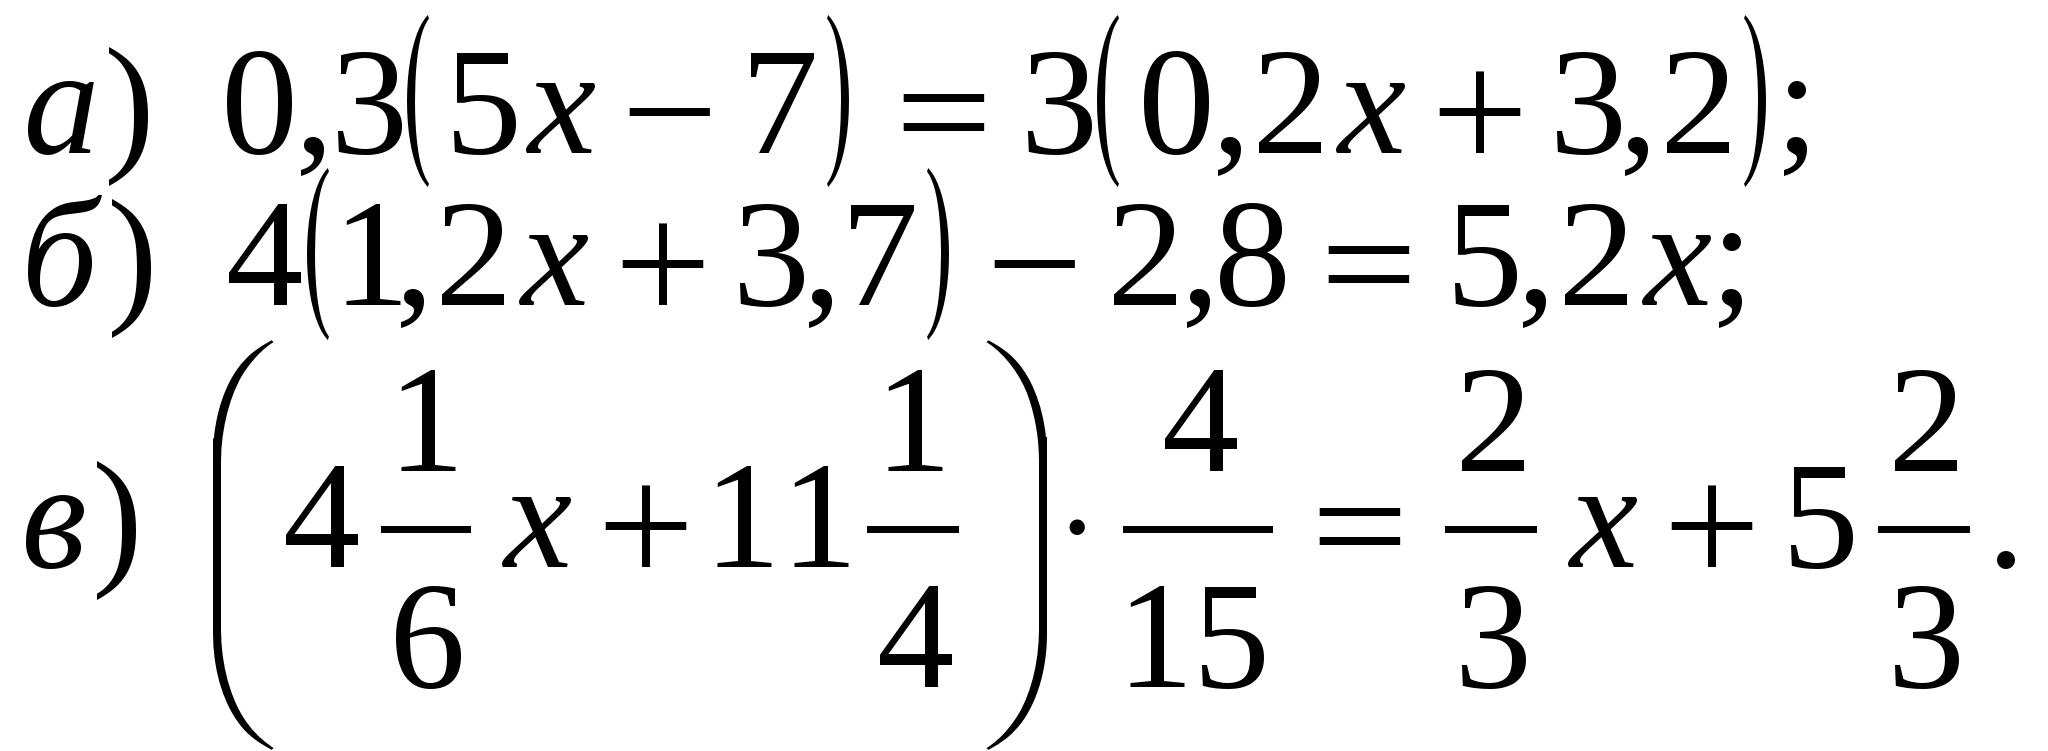 Математика 6 класс сложные уравнения. Сложные уравнения 6 класс. 6 Класс математика уравнения сложные. Уравнения 6 класс по математике. Математика 6 класс уравнения.